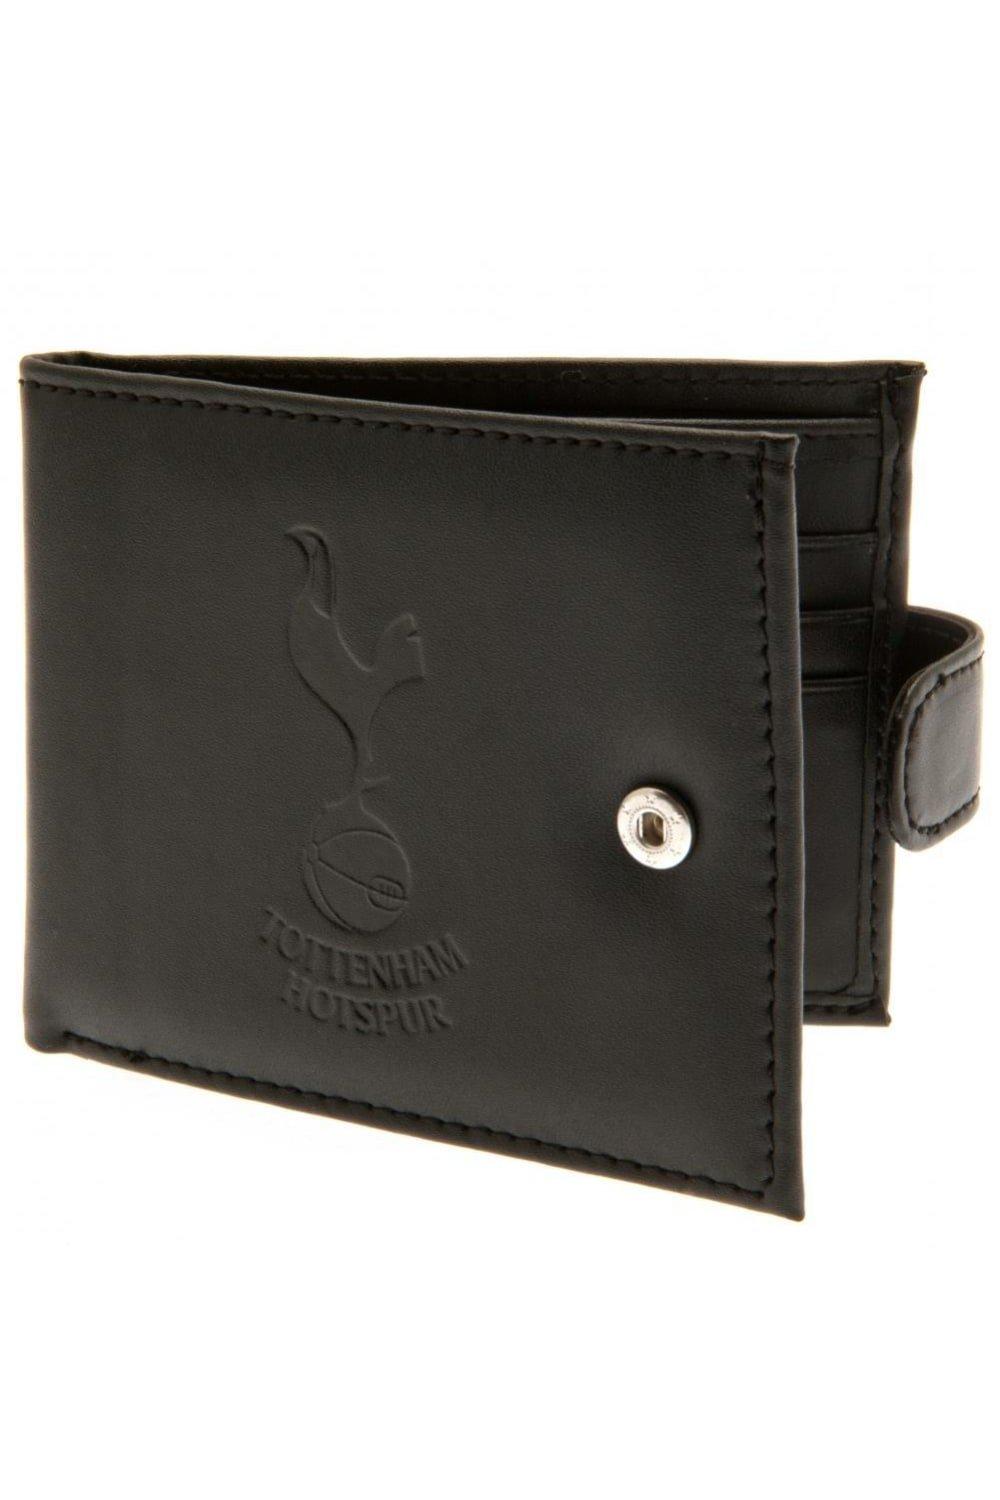 RFID-кошелек против мошенничества Tottenham Hotspur FC, черный цена и фото